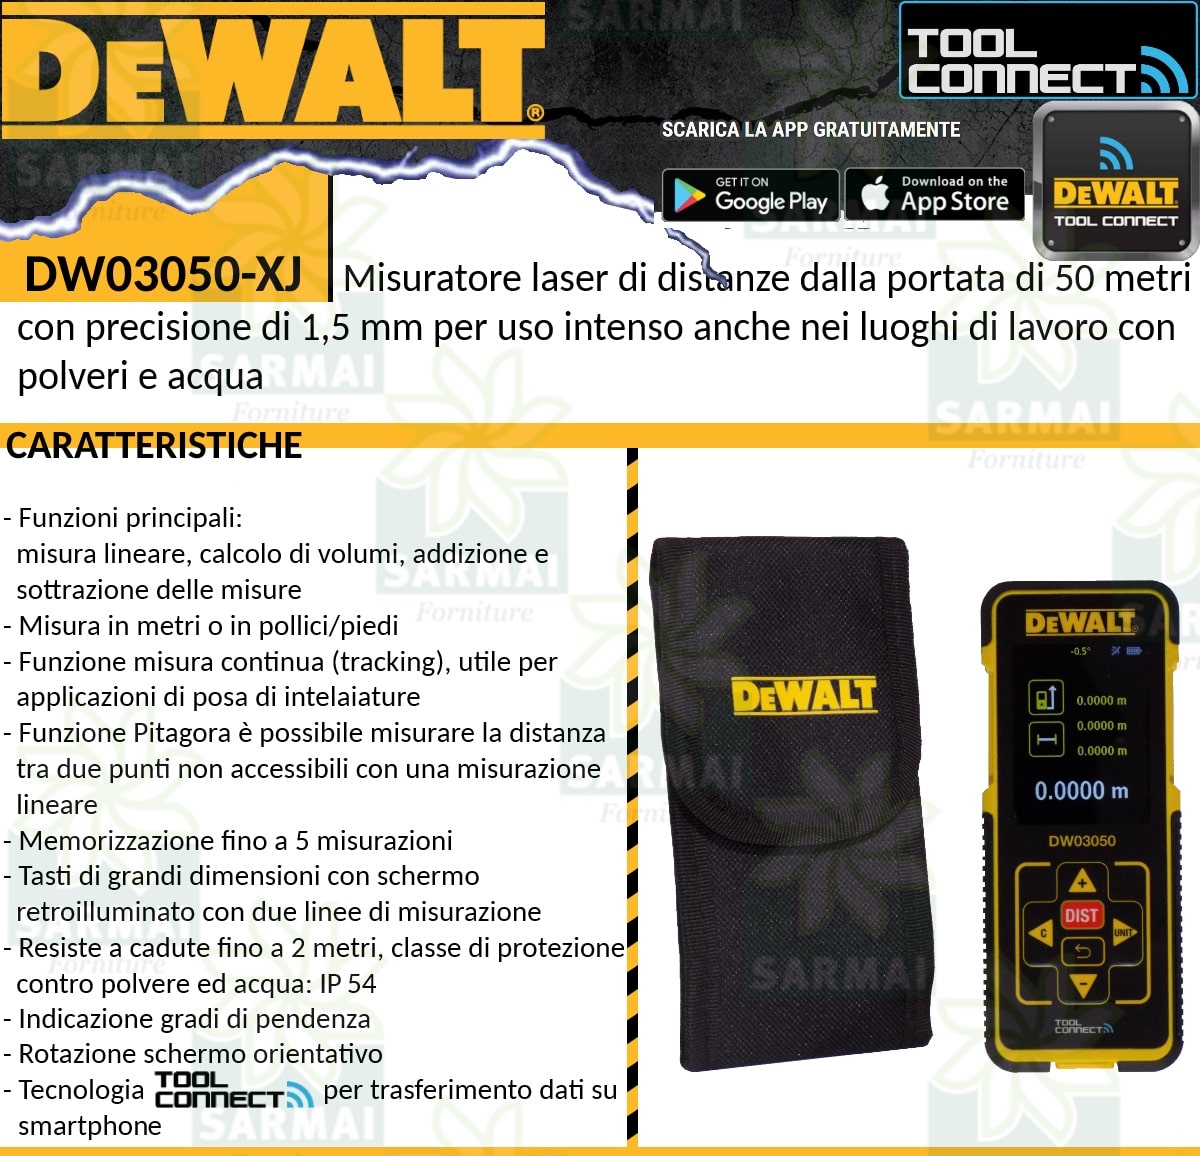 DeWALT DW03050 Misuratore laser di distanze 50 m precisione 1,5 mm